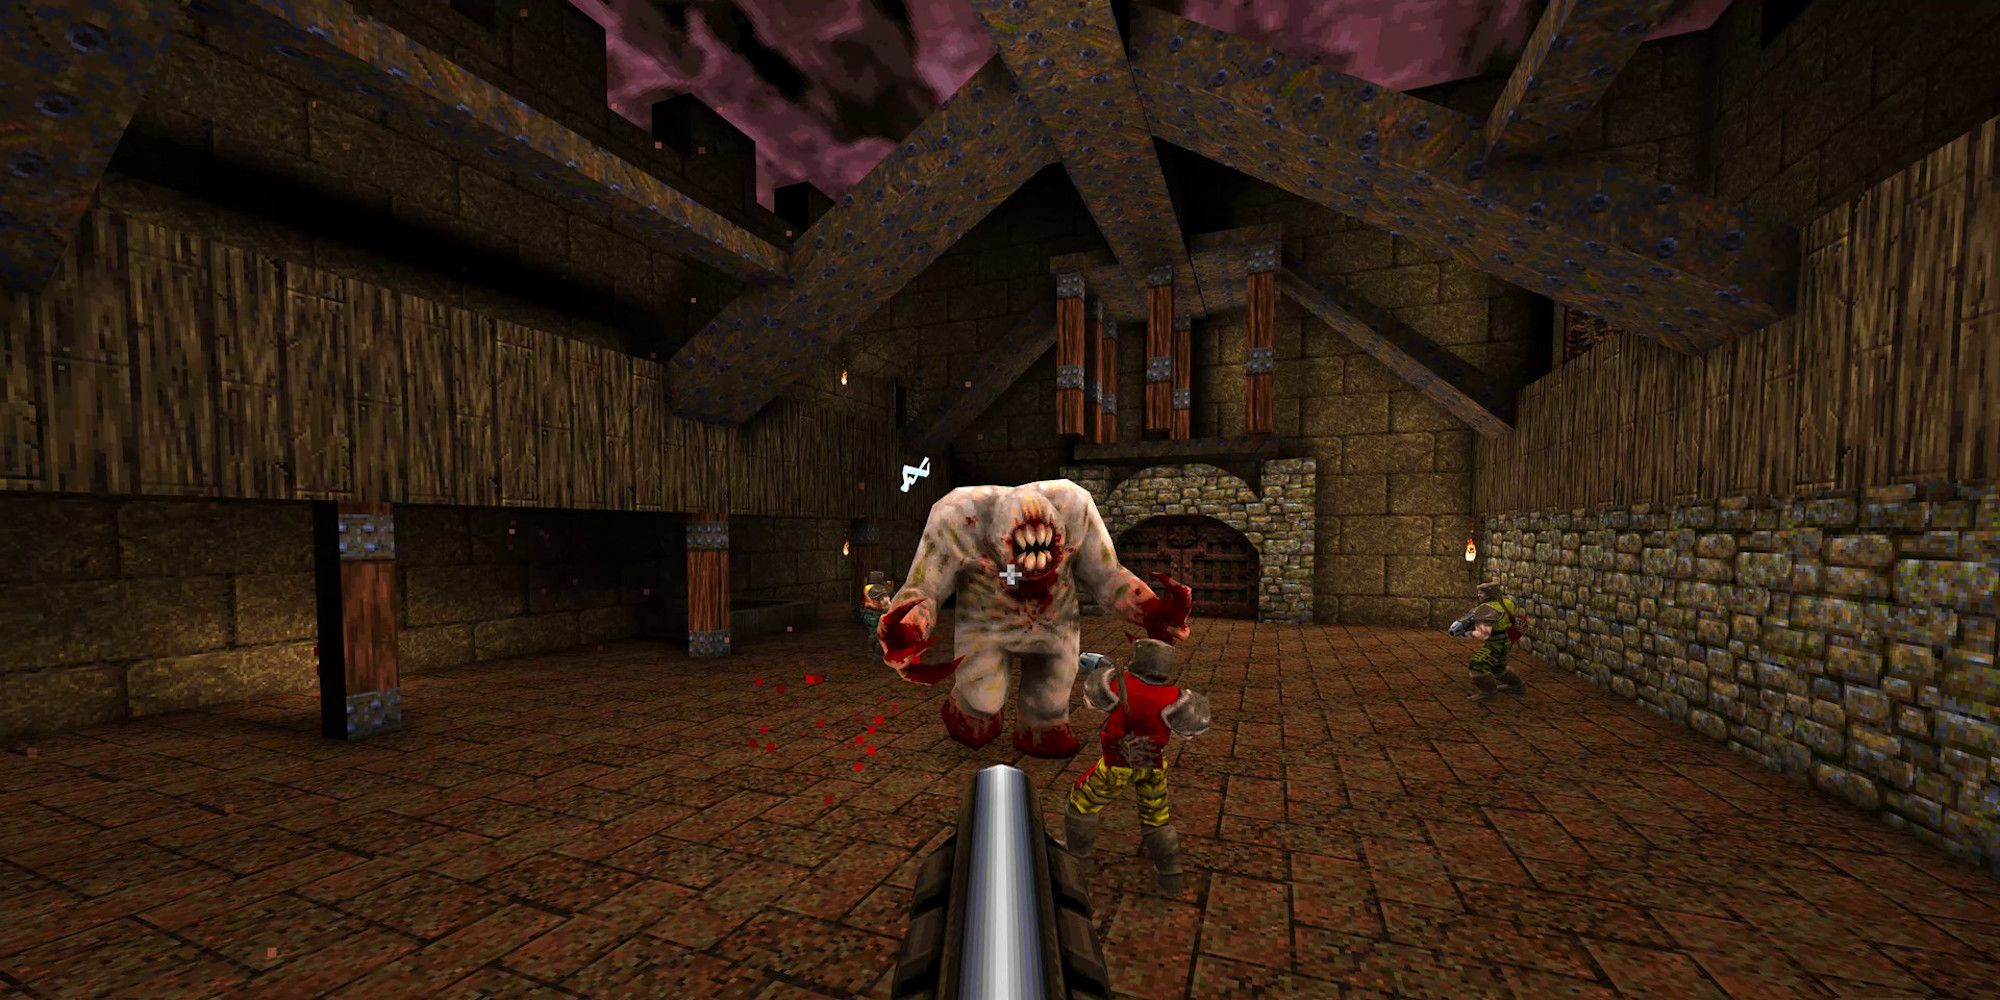 Quake On Steam actualizado a Remaster, gratis para propietarios existentes